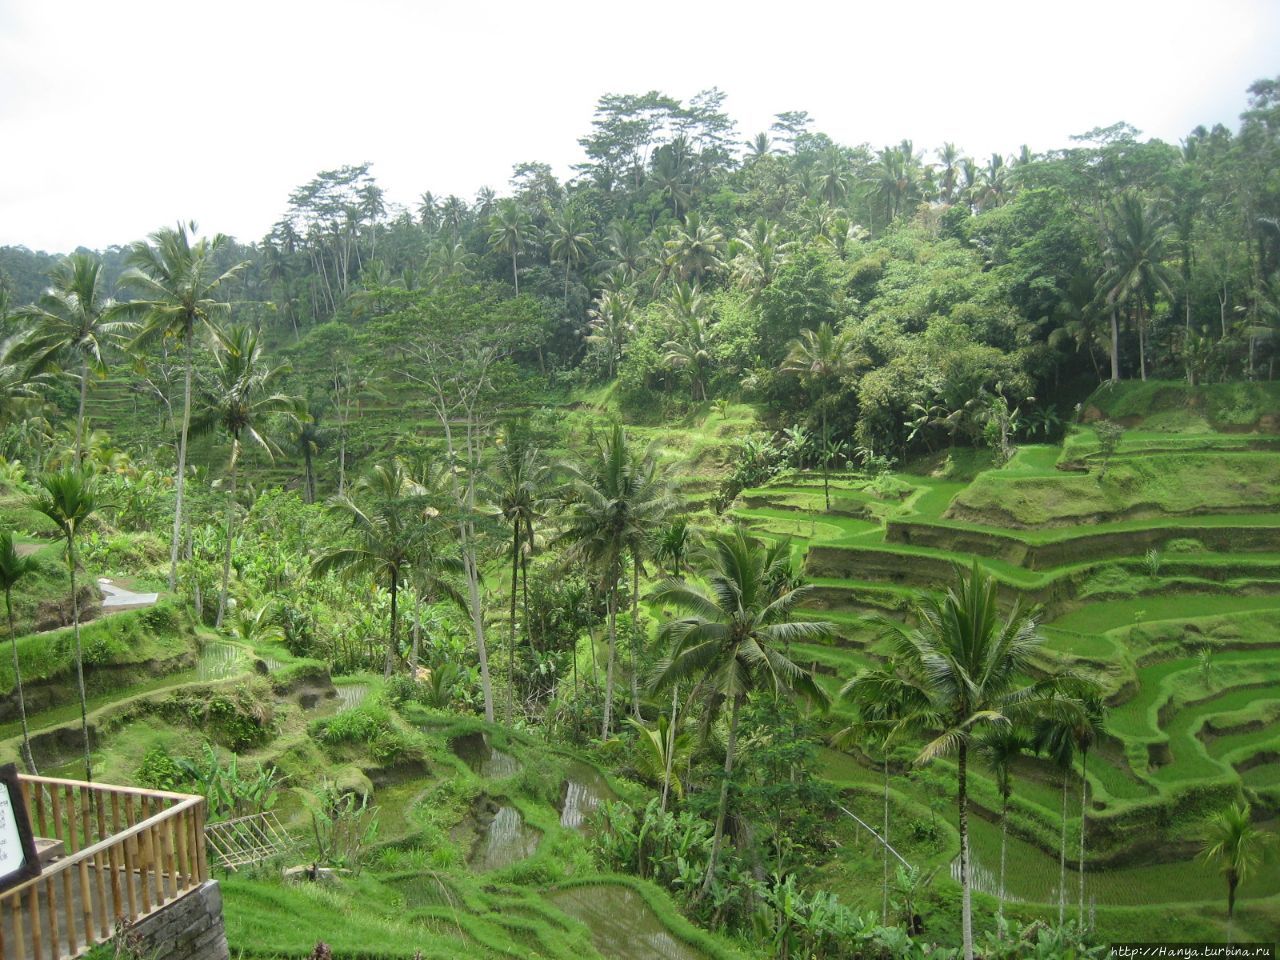 Рисовые террасы Тегалаланг Убуд, Индонезия